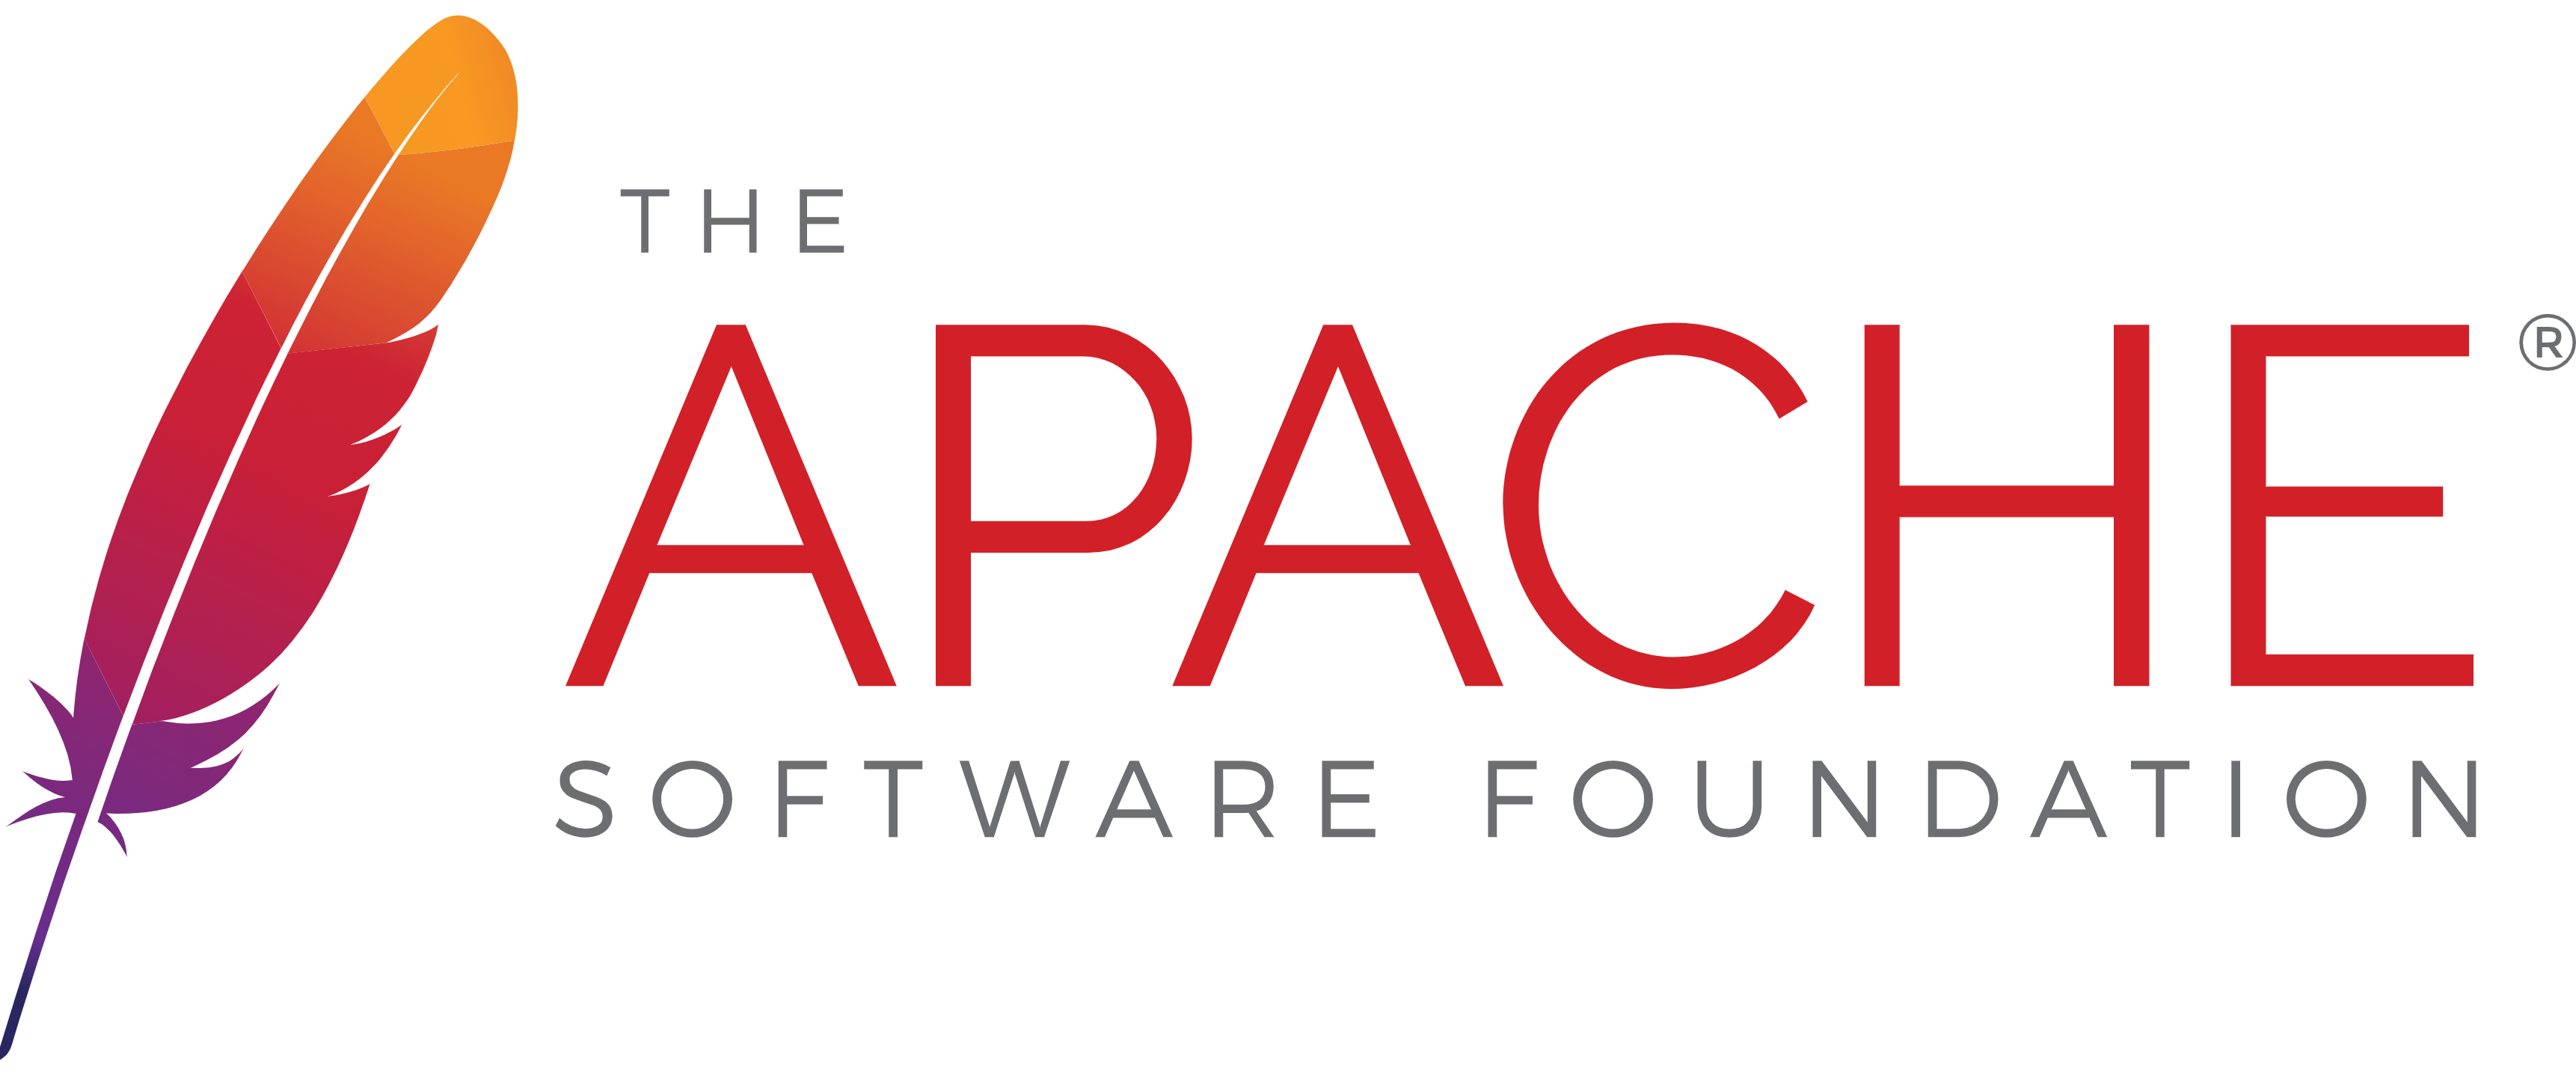 Consulter la documentation sur le serveur Web Apache